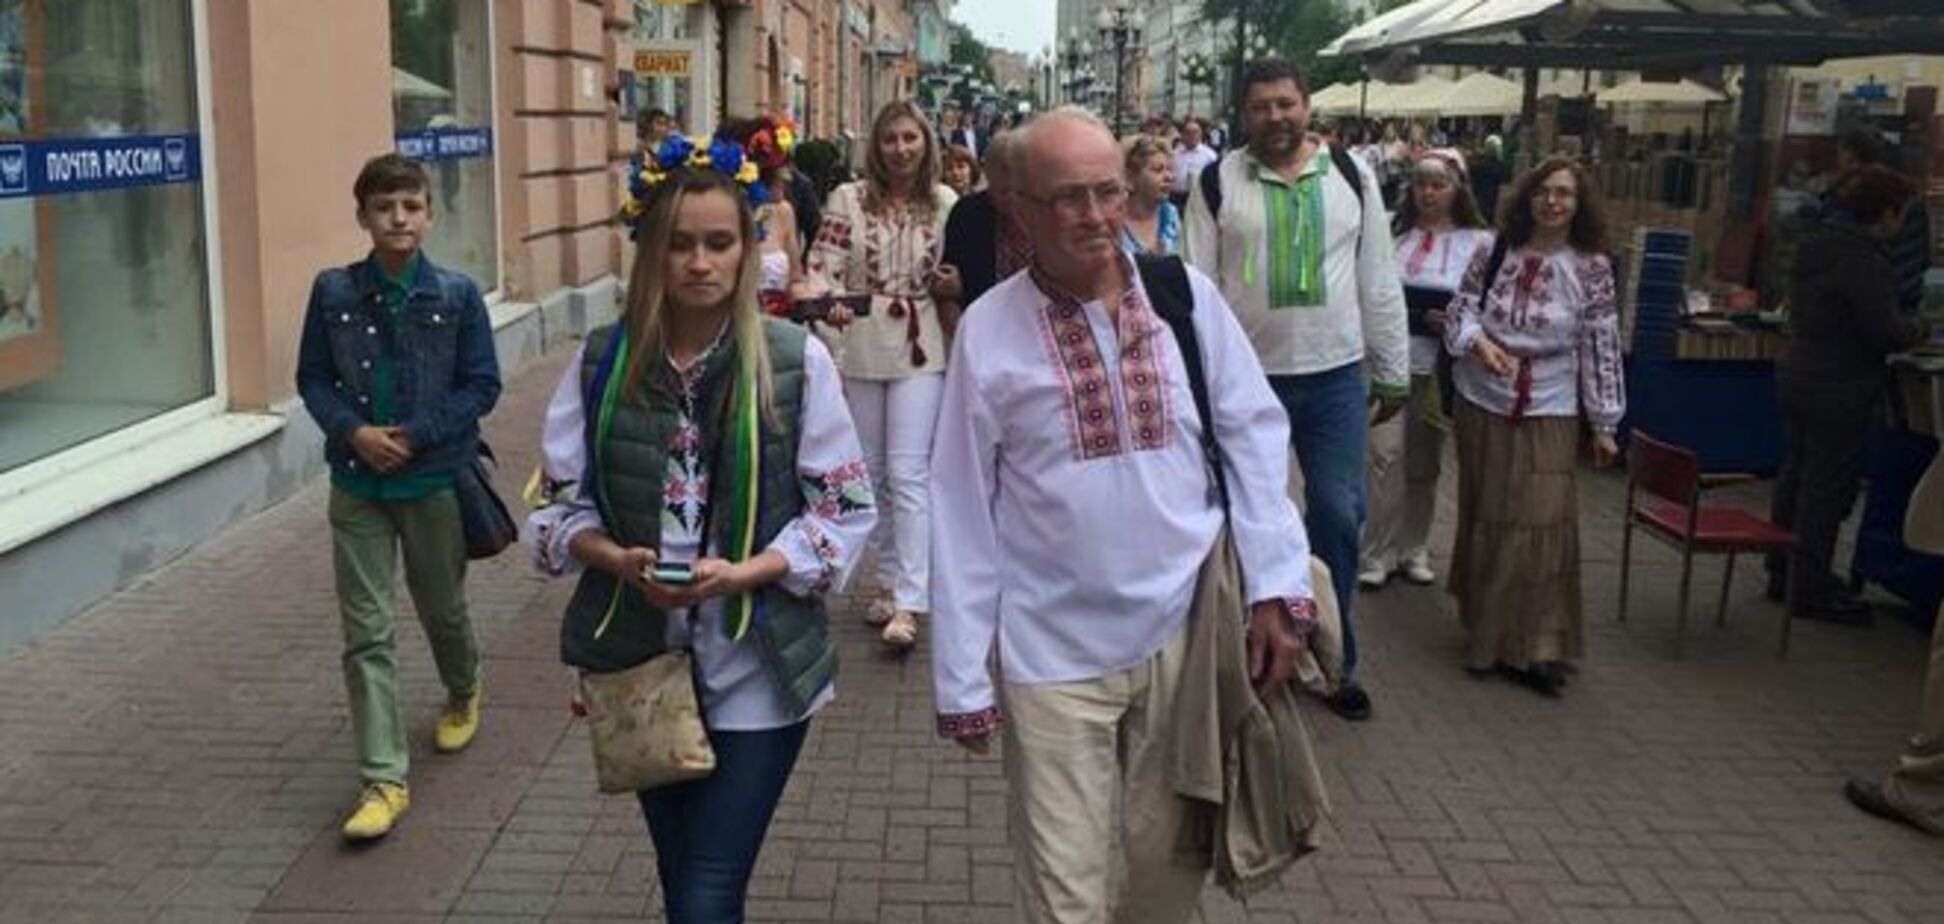 Уважили Украину! В центре Москвы прошел парад вышиванок